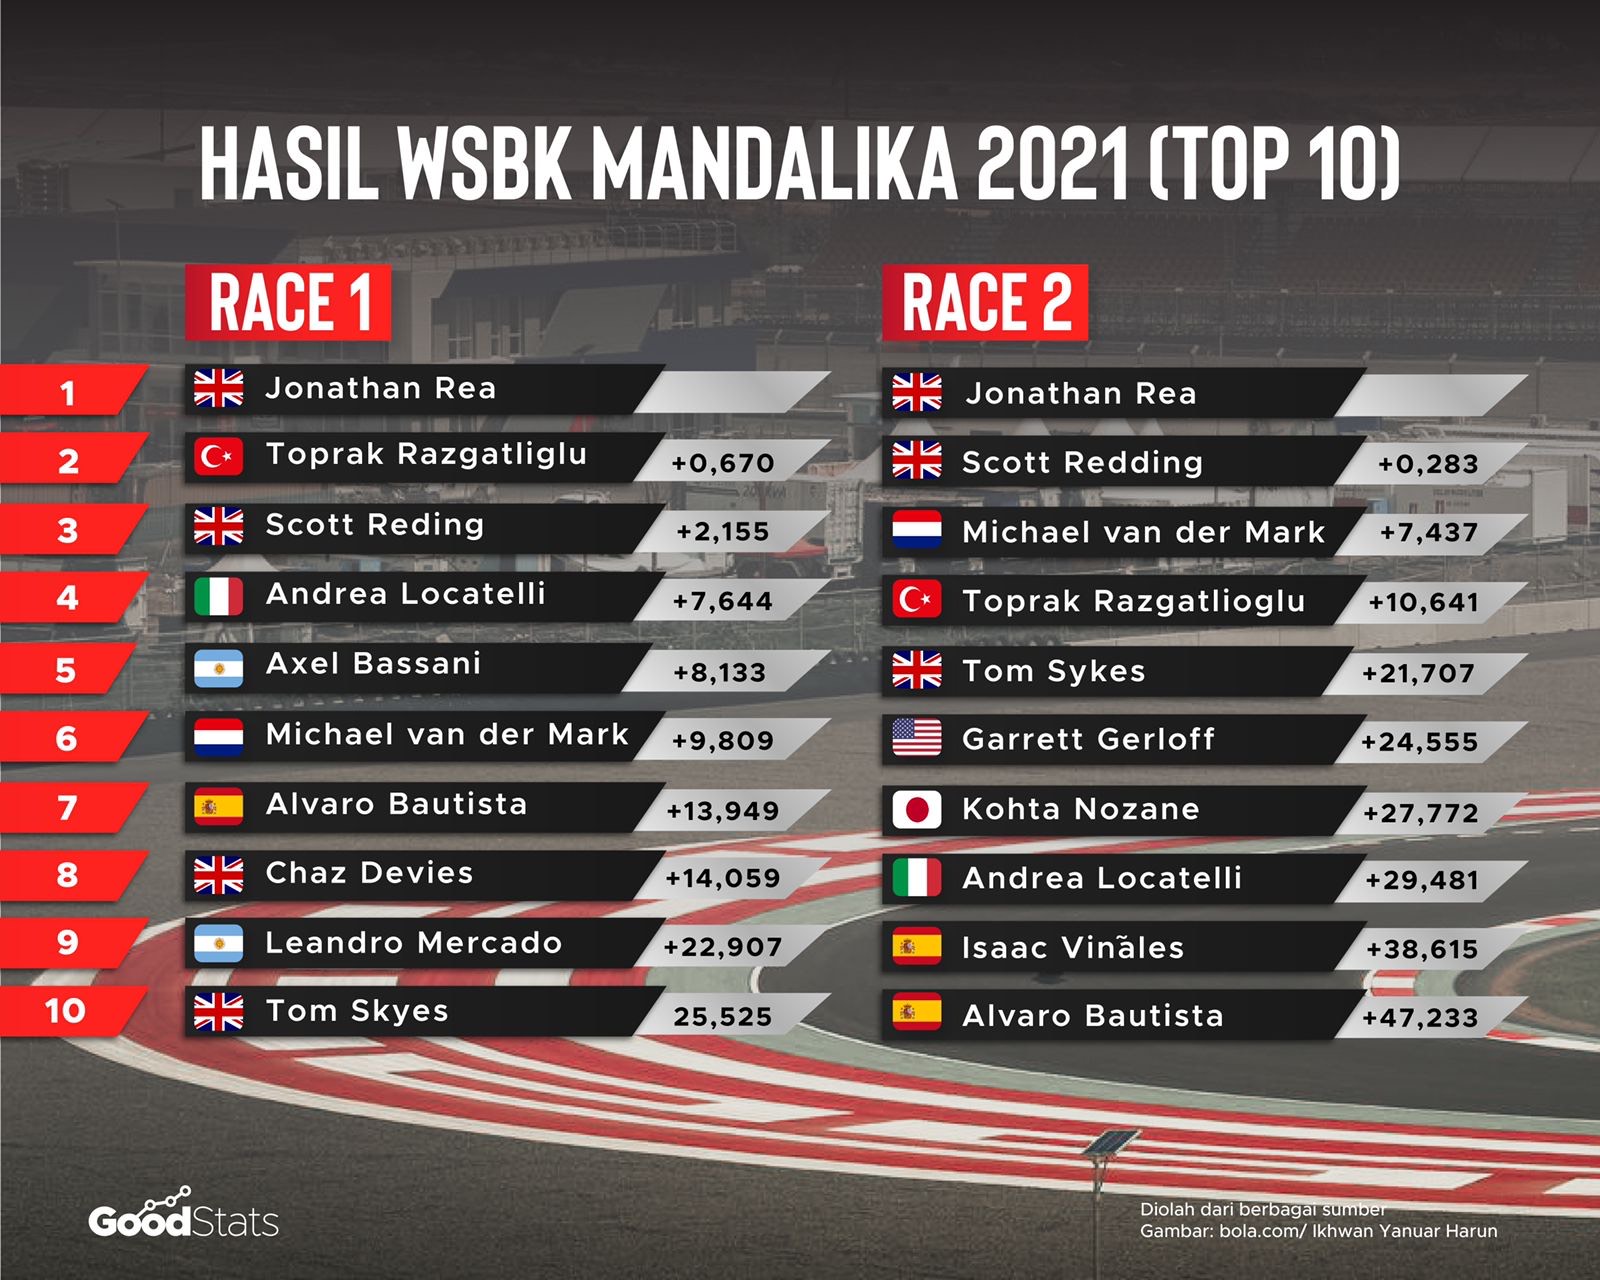 Hasil Race 1 dan Race 2 WSBK Mandalika 2021 | GoodStats